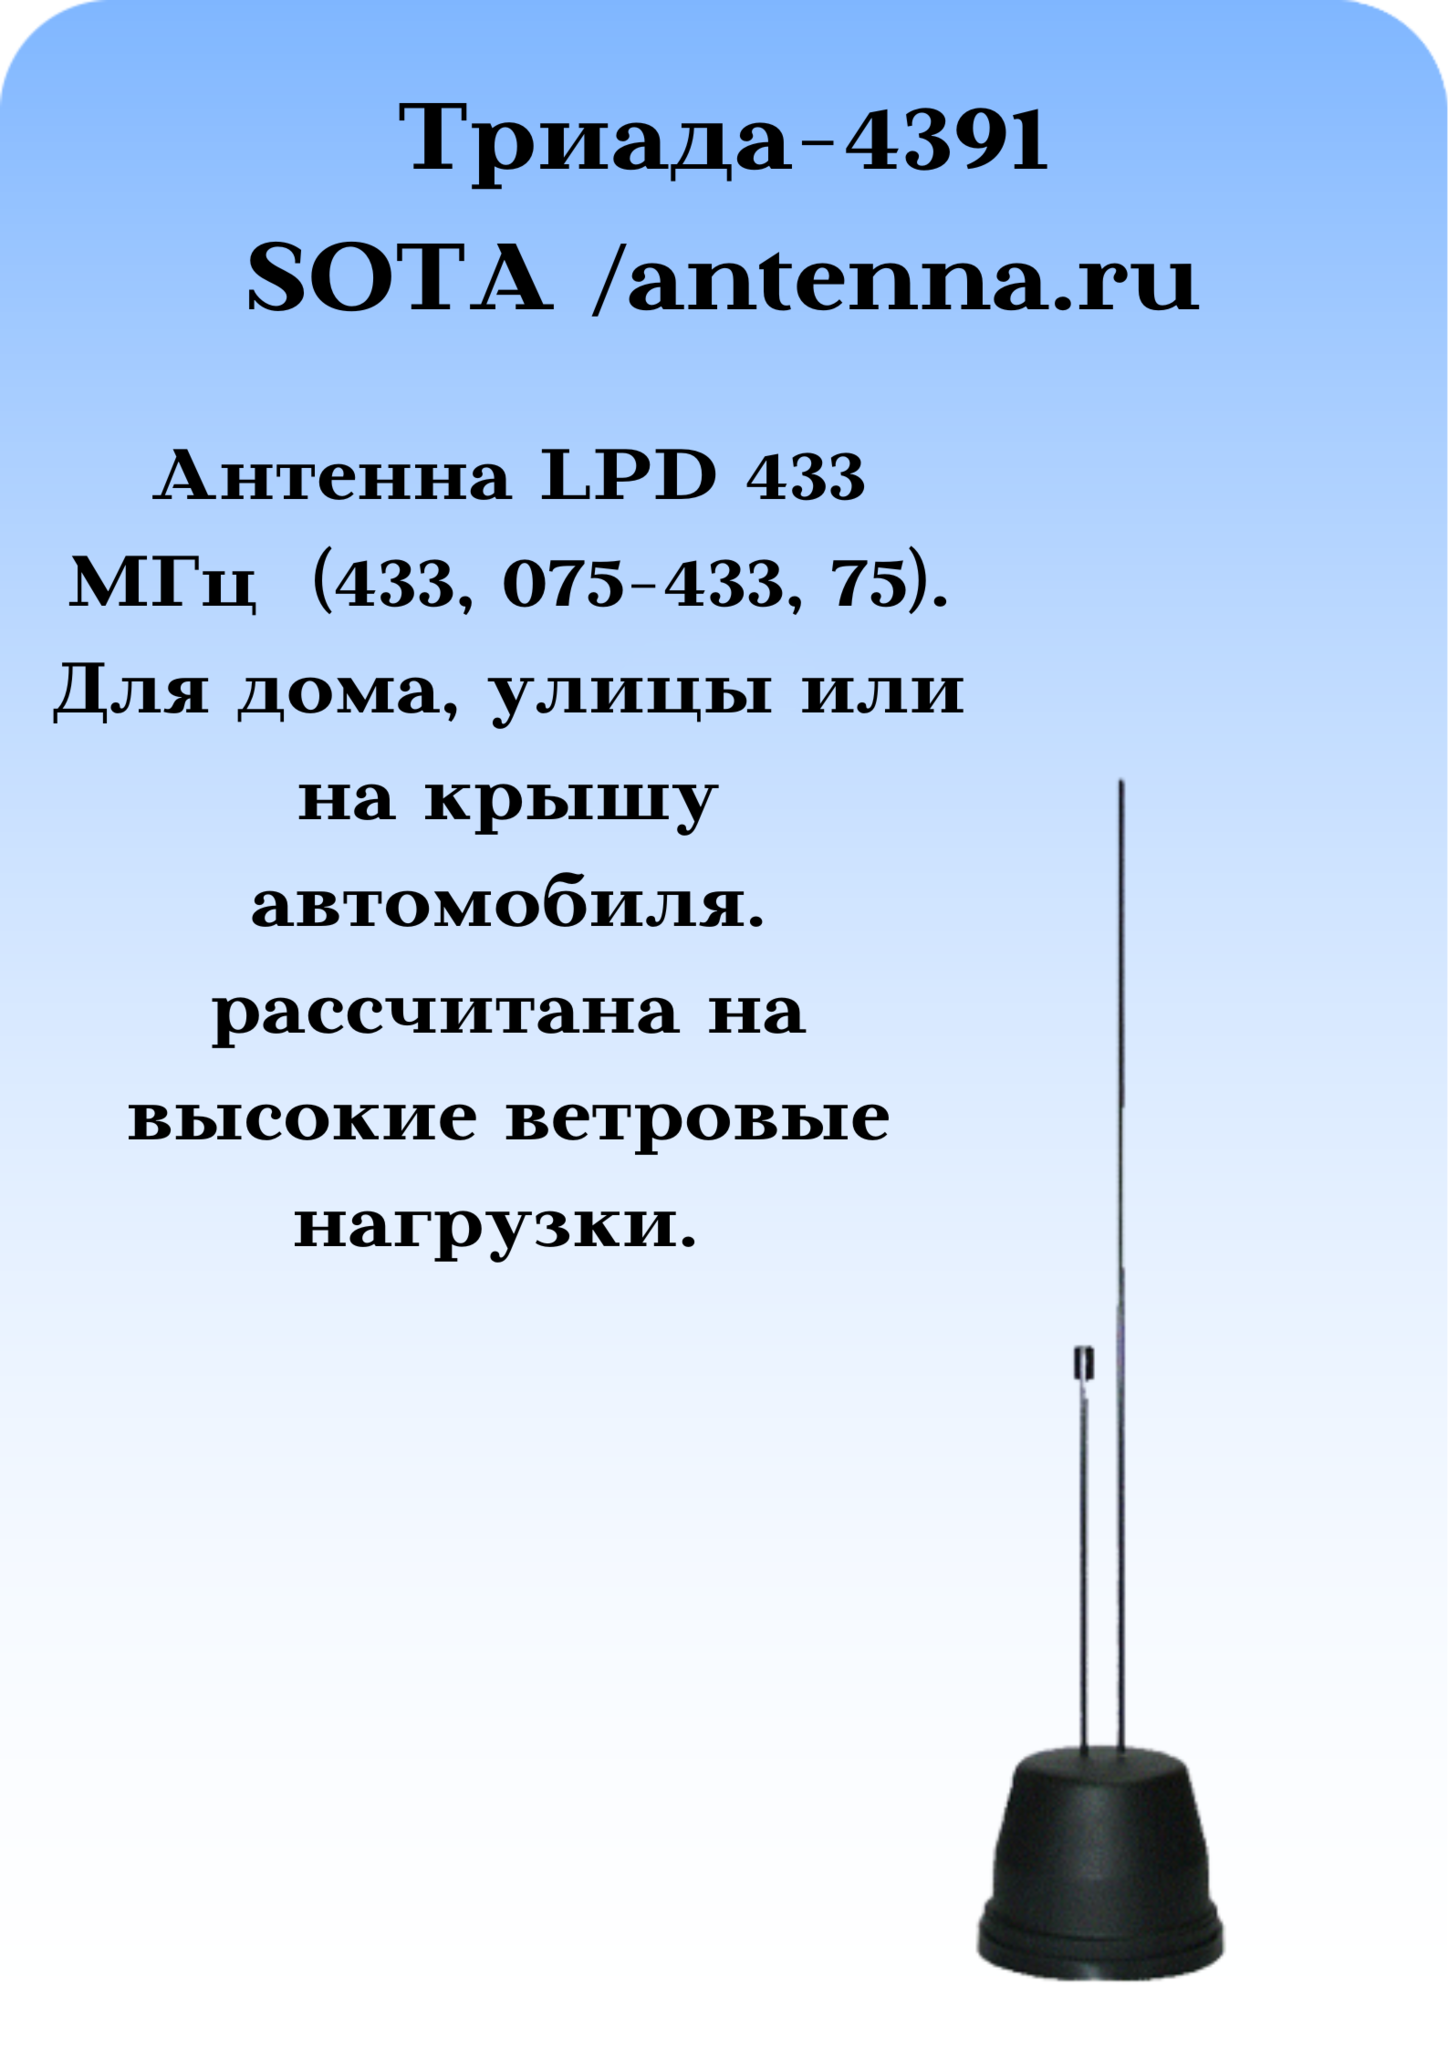 Триада-4391 SOTA/antenna.ru. Антенна LPD 433 МГц круговая на магните с большим усилением